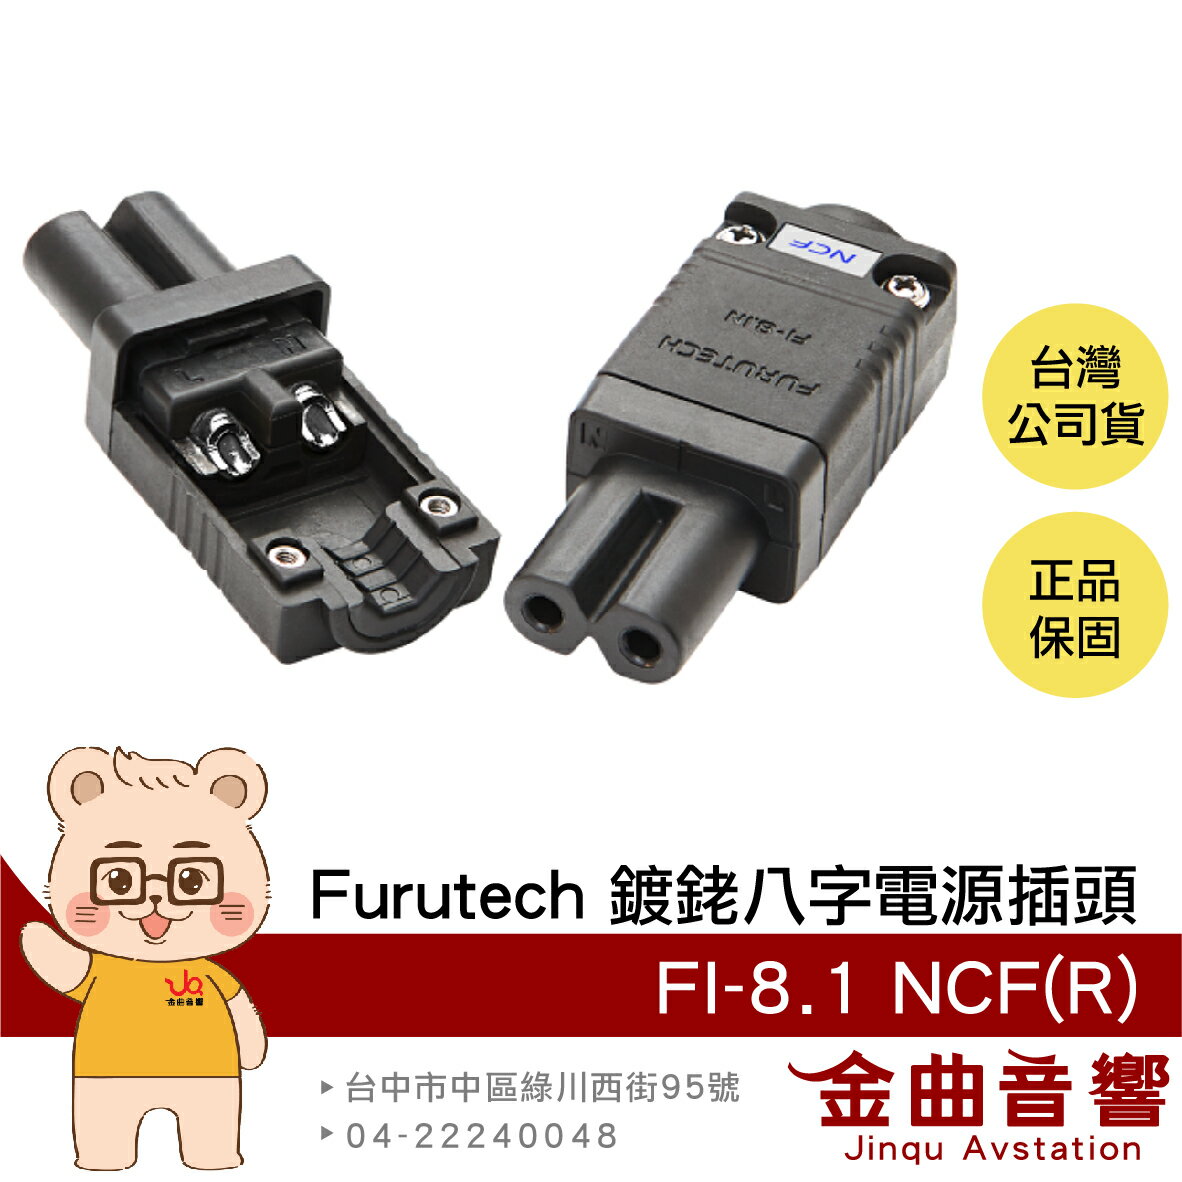 FURUTECH 古河 FI-8.1 NCF(R) 母頭 薄型奈米 鍍銠 八字 電源插頭 | 金曲音響